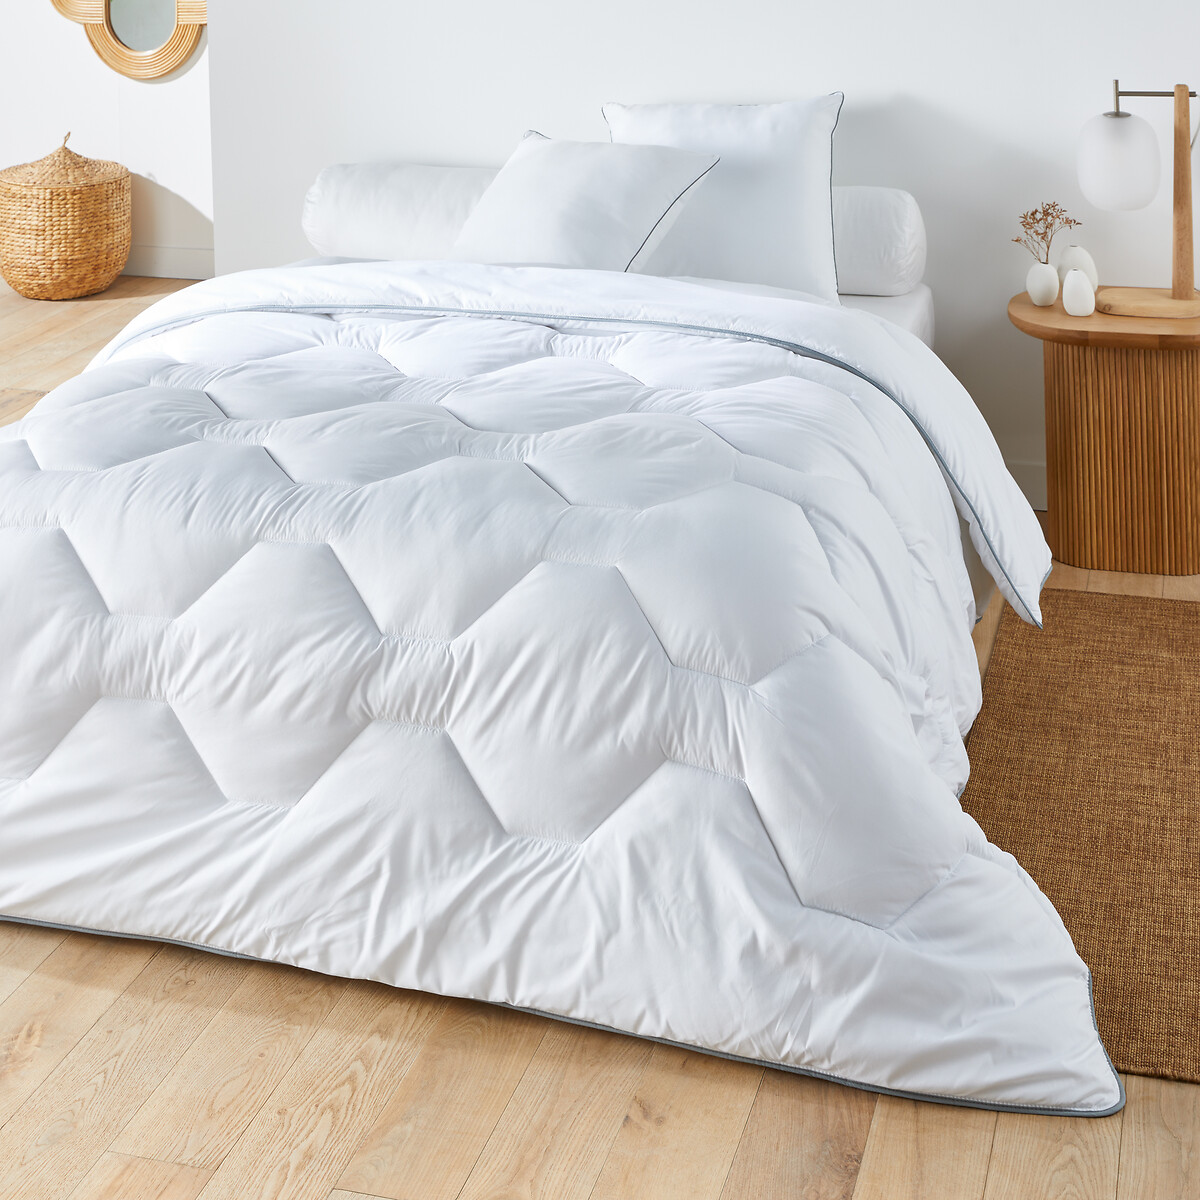 Одеяло из синтетического материала для прохладных помещений Confort htel  260 x 240 см белый LaRedoute, размер 260 x 240 см - фото 1